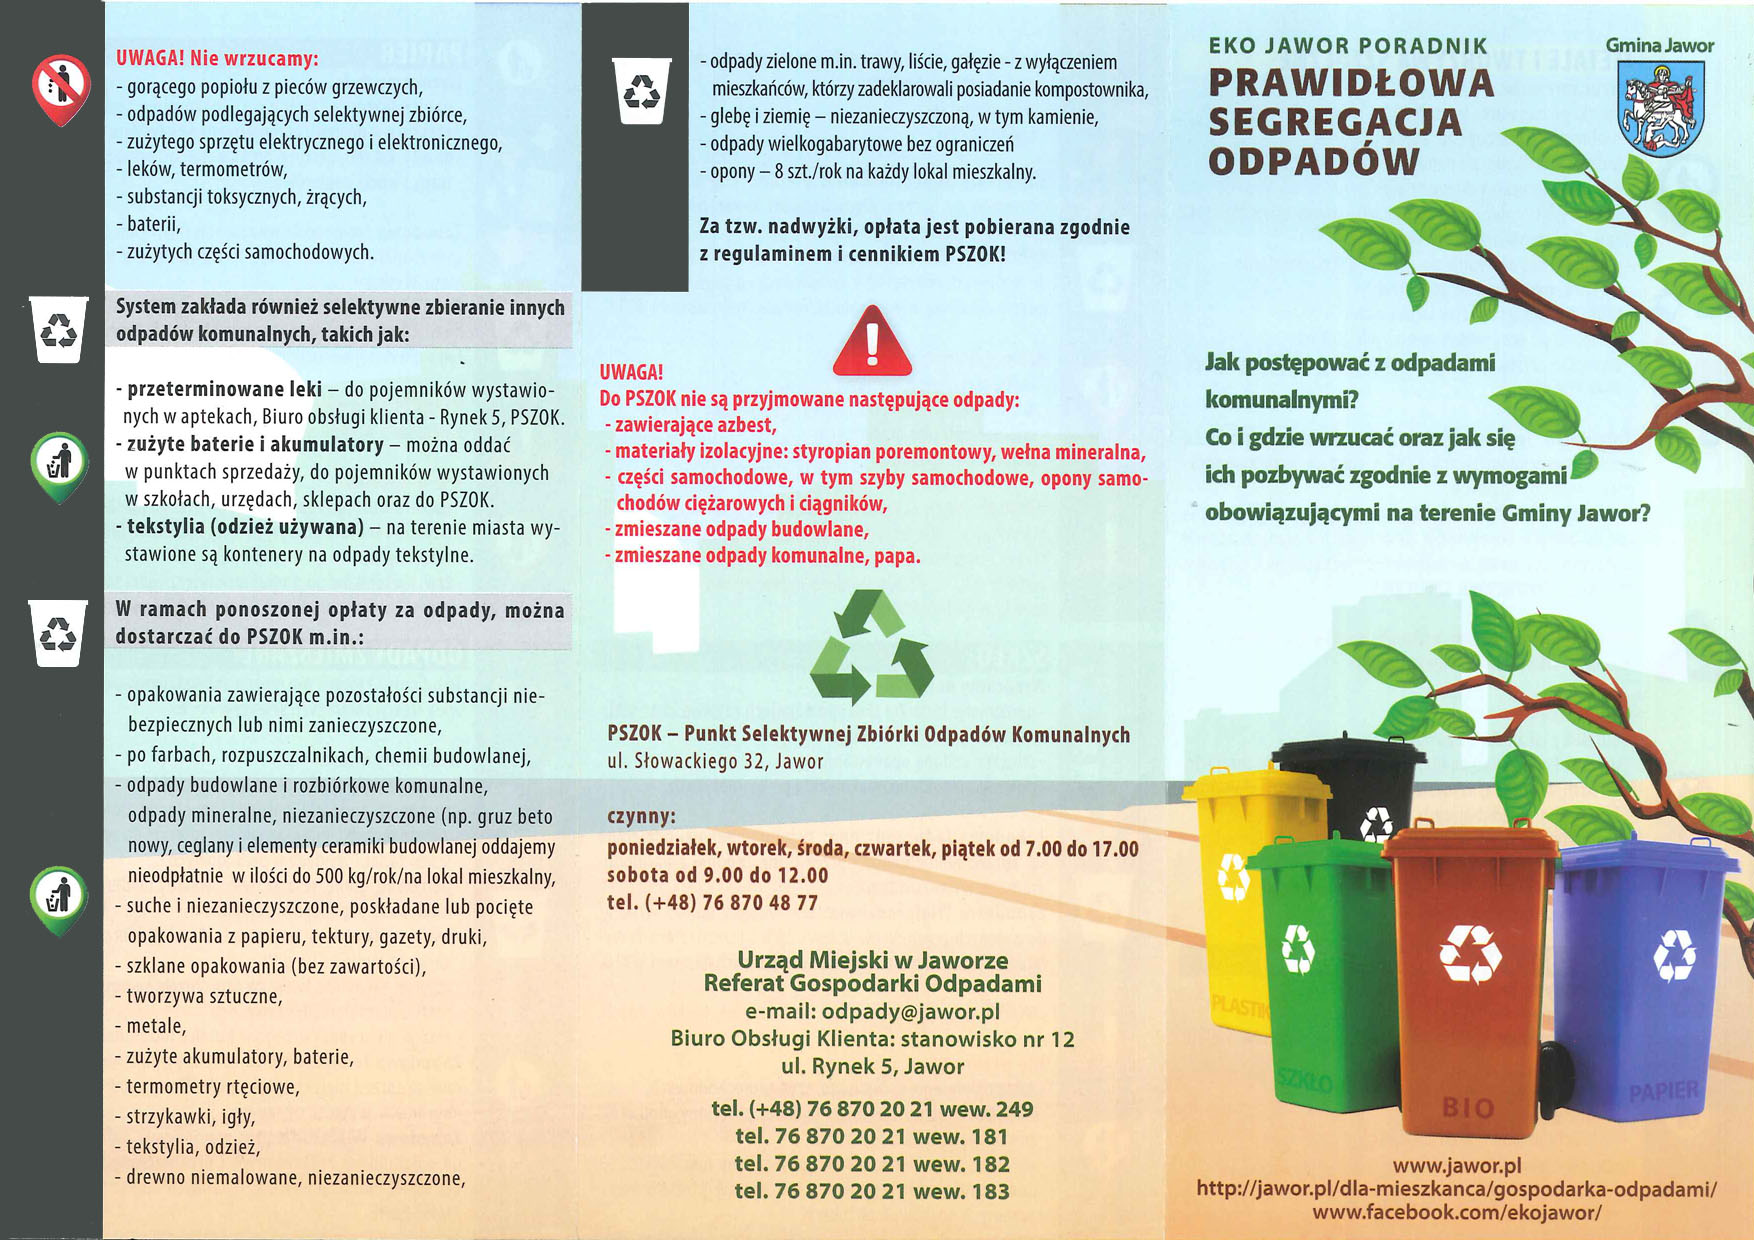 PSZOK - Punkt Selektywnej Zbiórki Odpadów Komunalnych